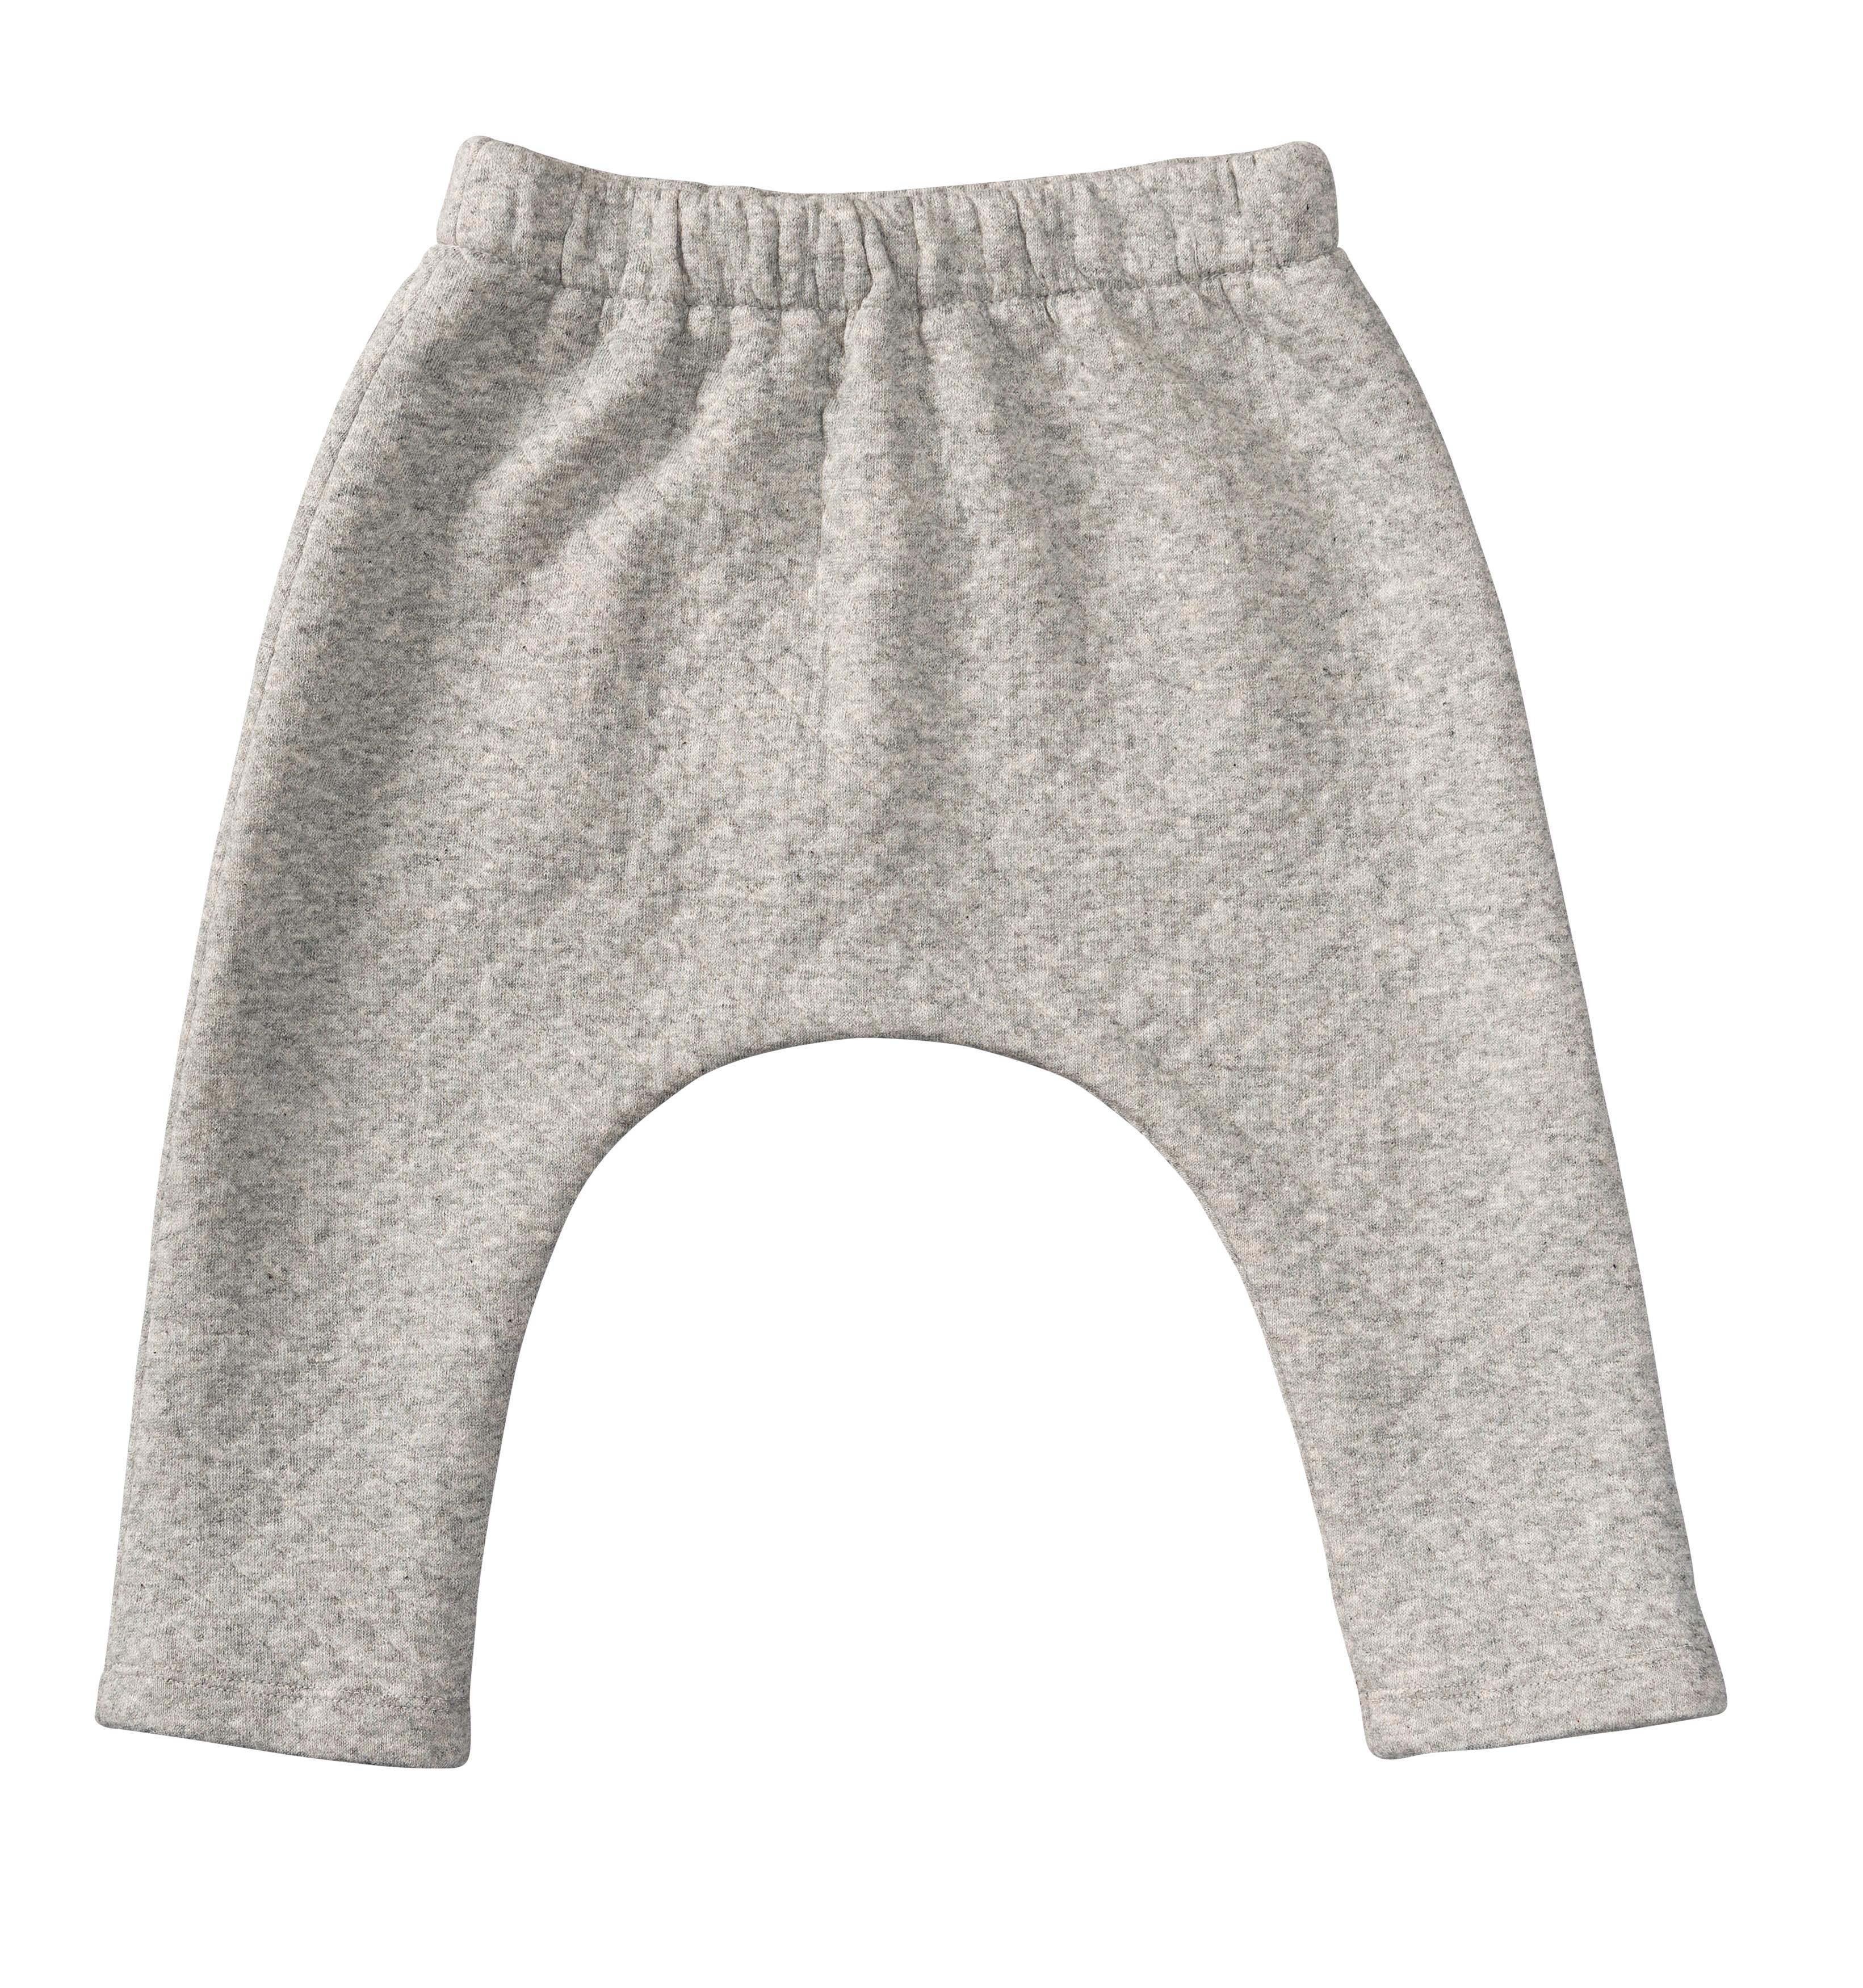 Burda B9297 Sweatjacket & Pull-on Trousers/Pants  Sewing Pattern